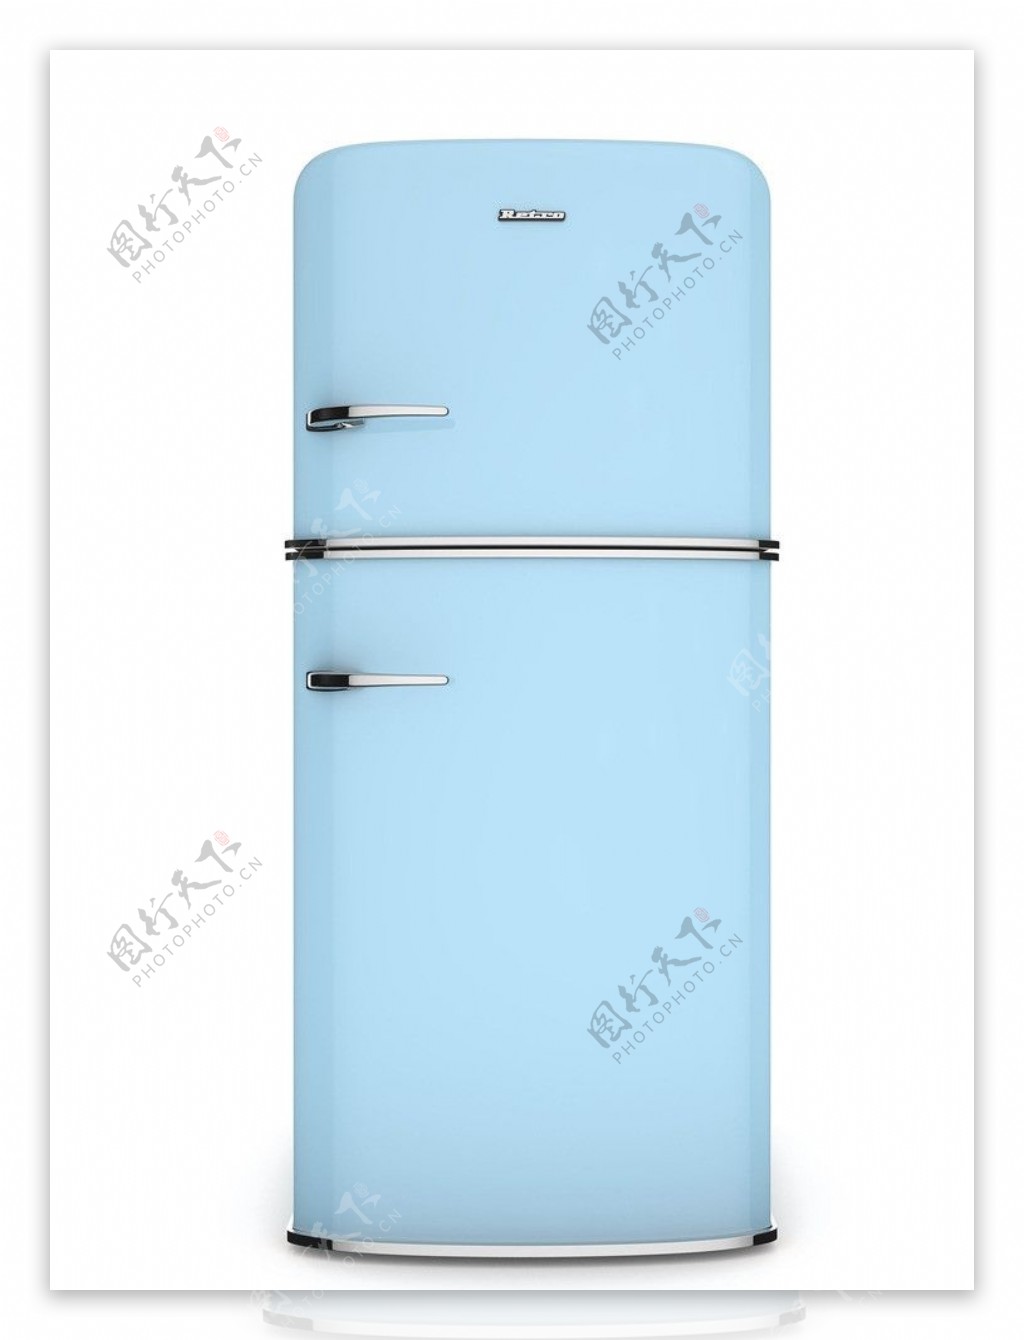 淡蓝色冰箱图片